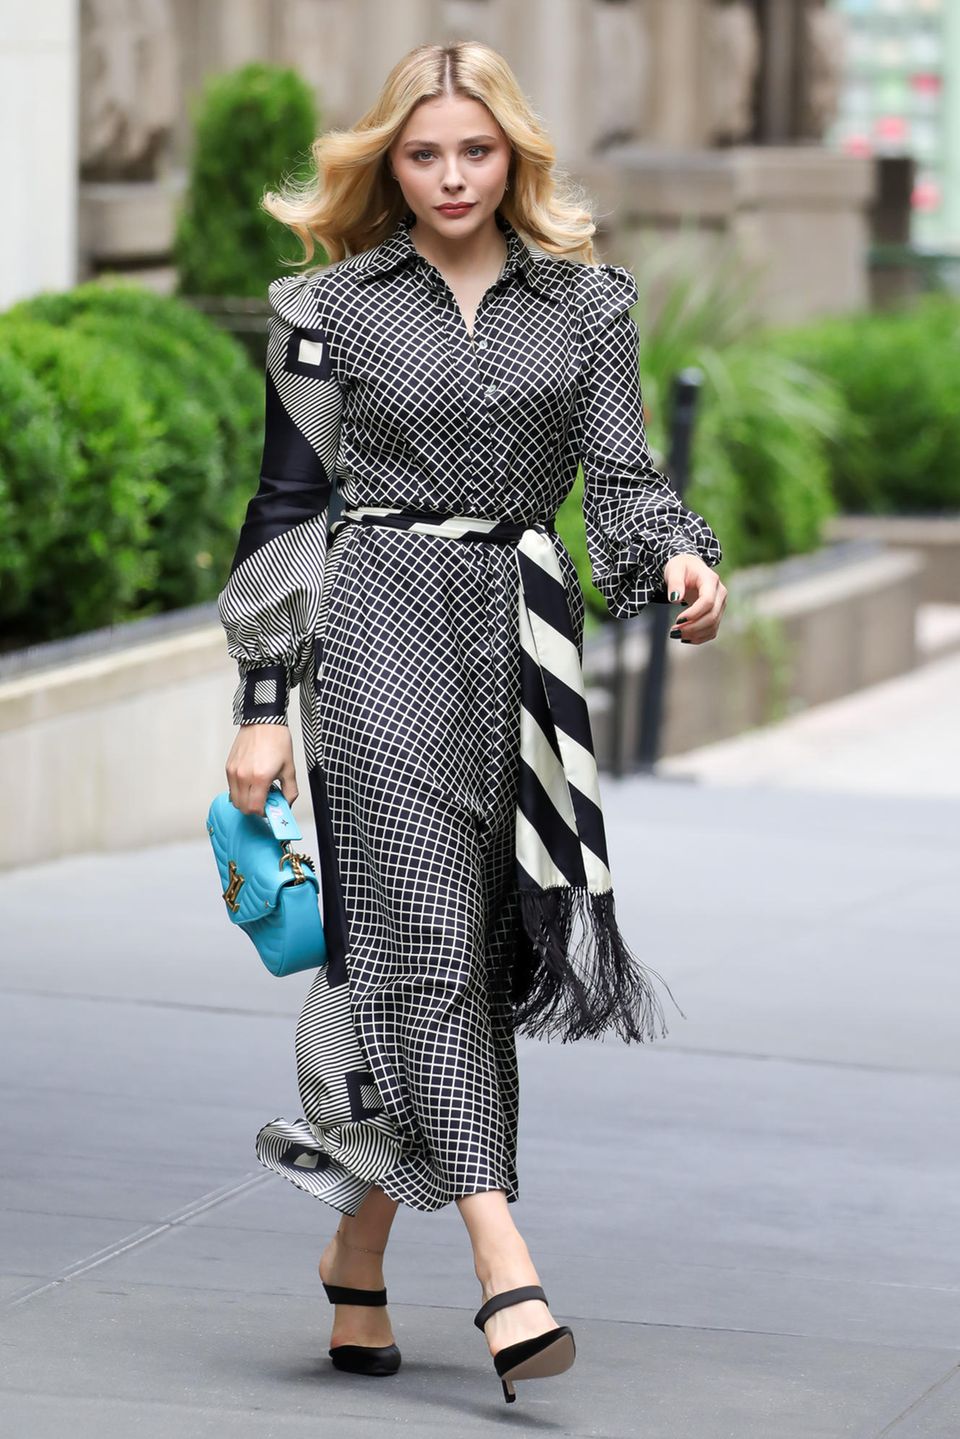 Allein das karierte Hemdkleid von Chloë Grace Moretz ist durch das Muster ein absoluter Hingucker. Mit der Handtasche von Louis Vuitton wird der Look jedoch zum Mega-Highlight.